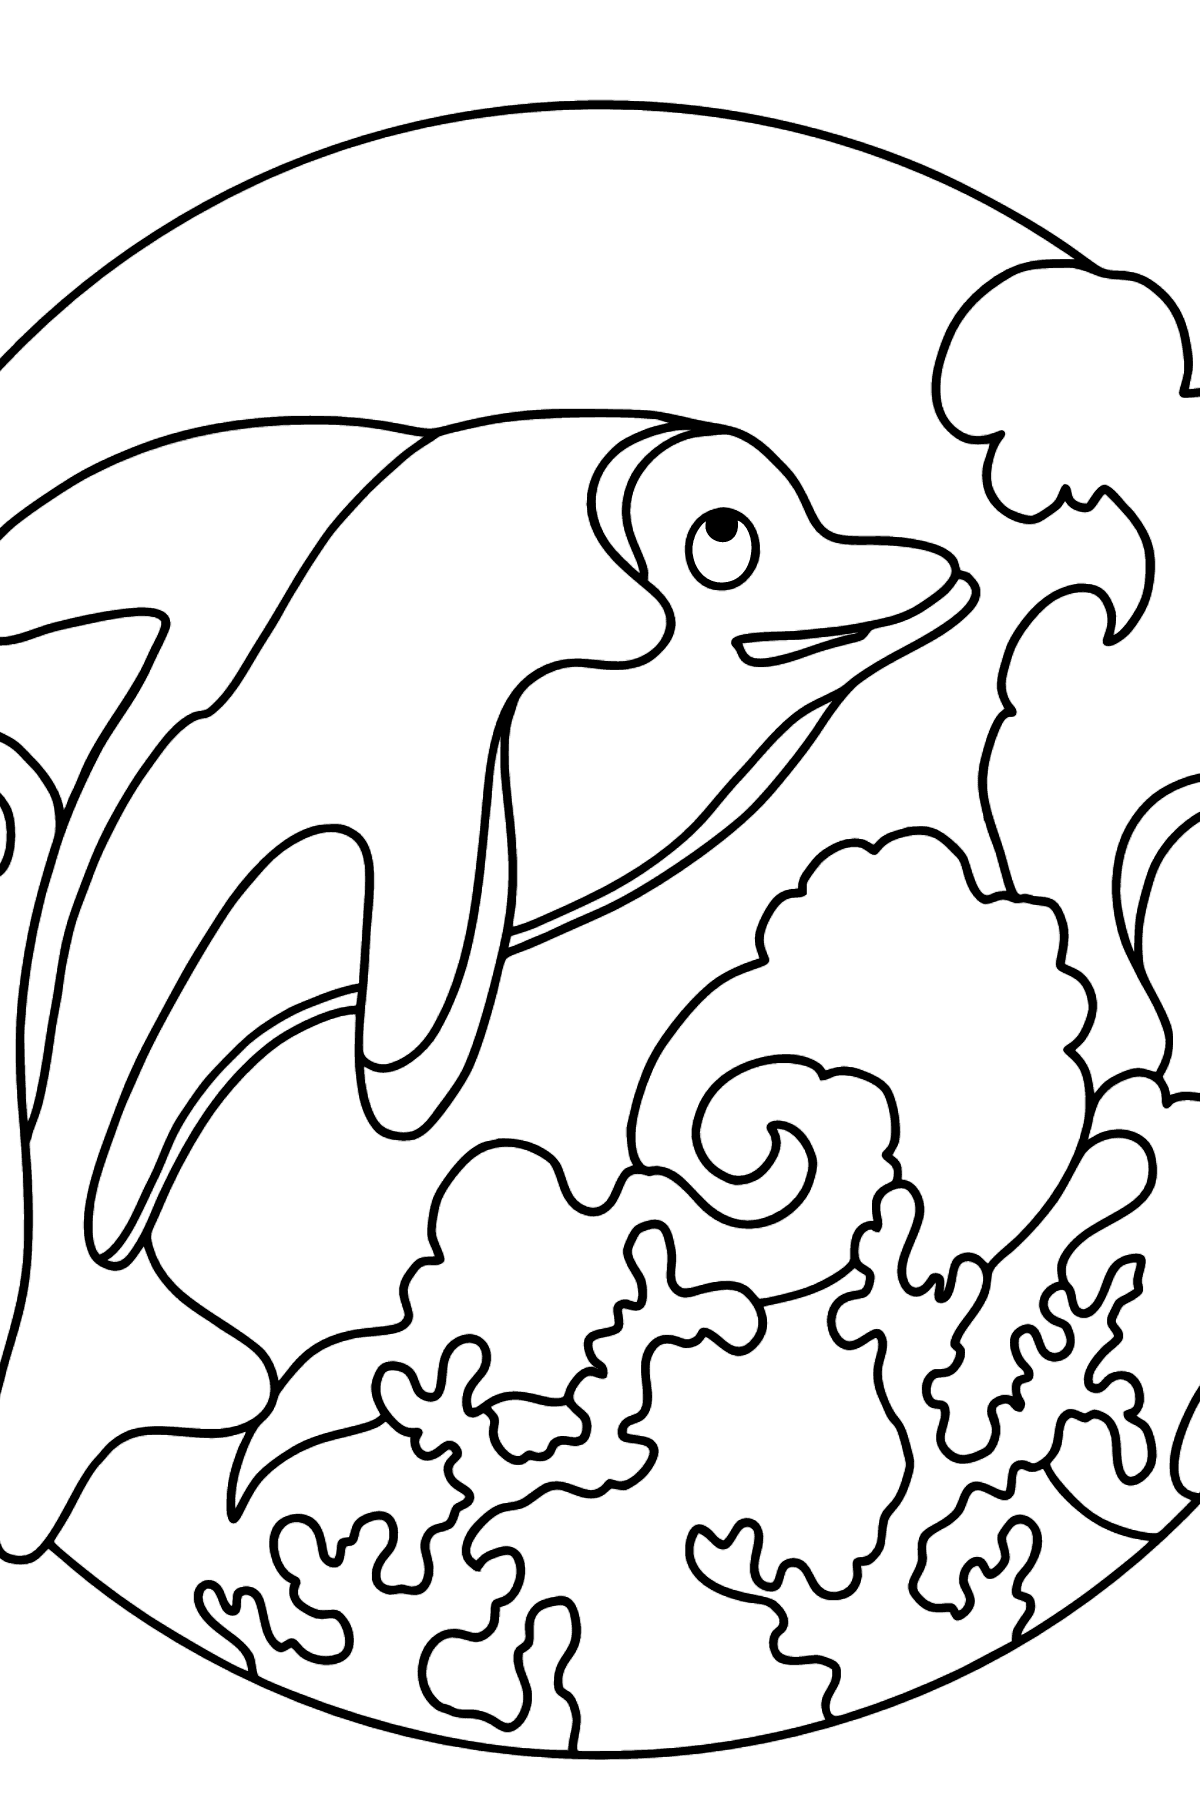 Prosta kolorowanka z delfinami dla dzieci - Kolorowanki dla dzieci